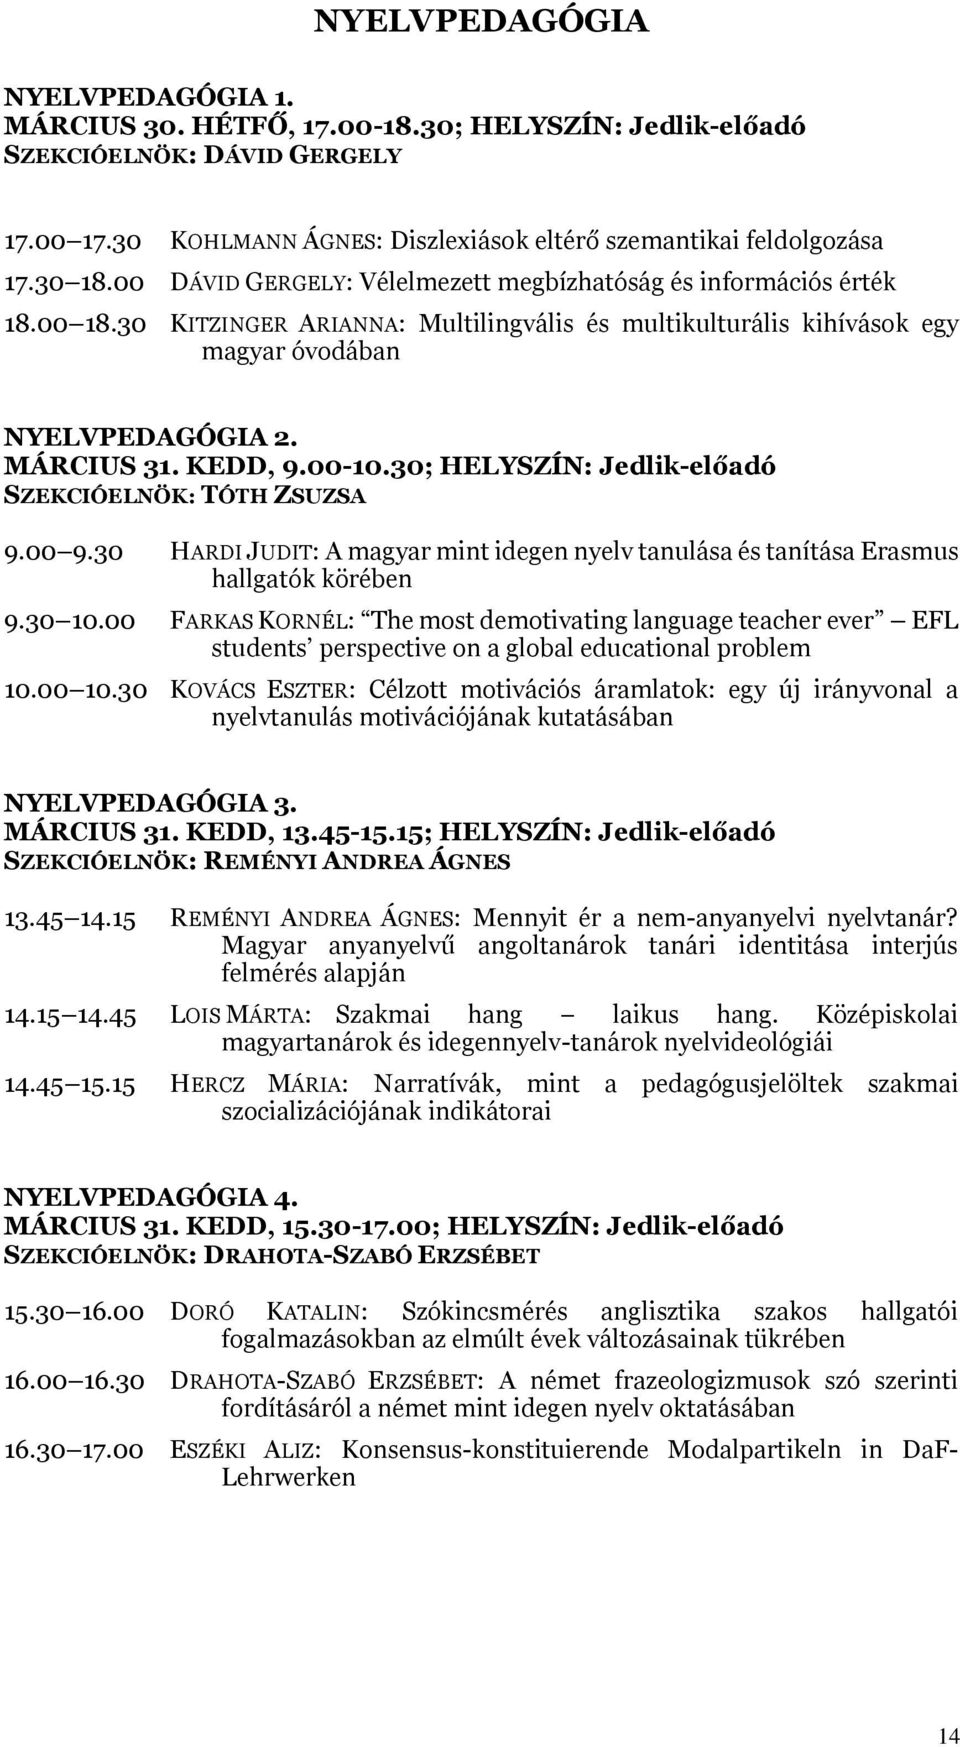 00-10.30; HELYSZÍN: Jedlik-előadó SZEKCIÓELNÖK: TÓTH ZSUZSA 9.00 9.30 HARDI JUDIT: A magyar mint idegen nyelv tanulása és tanítása Erasmus hallgatók körében 9.30 10.